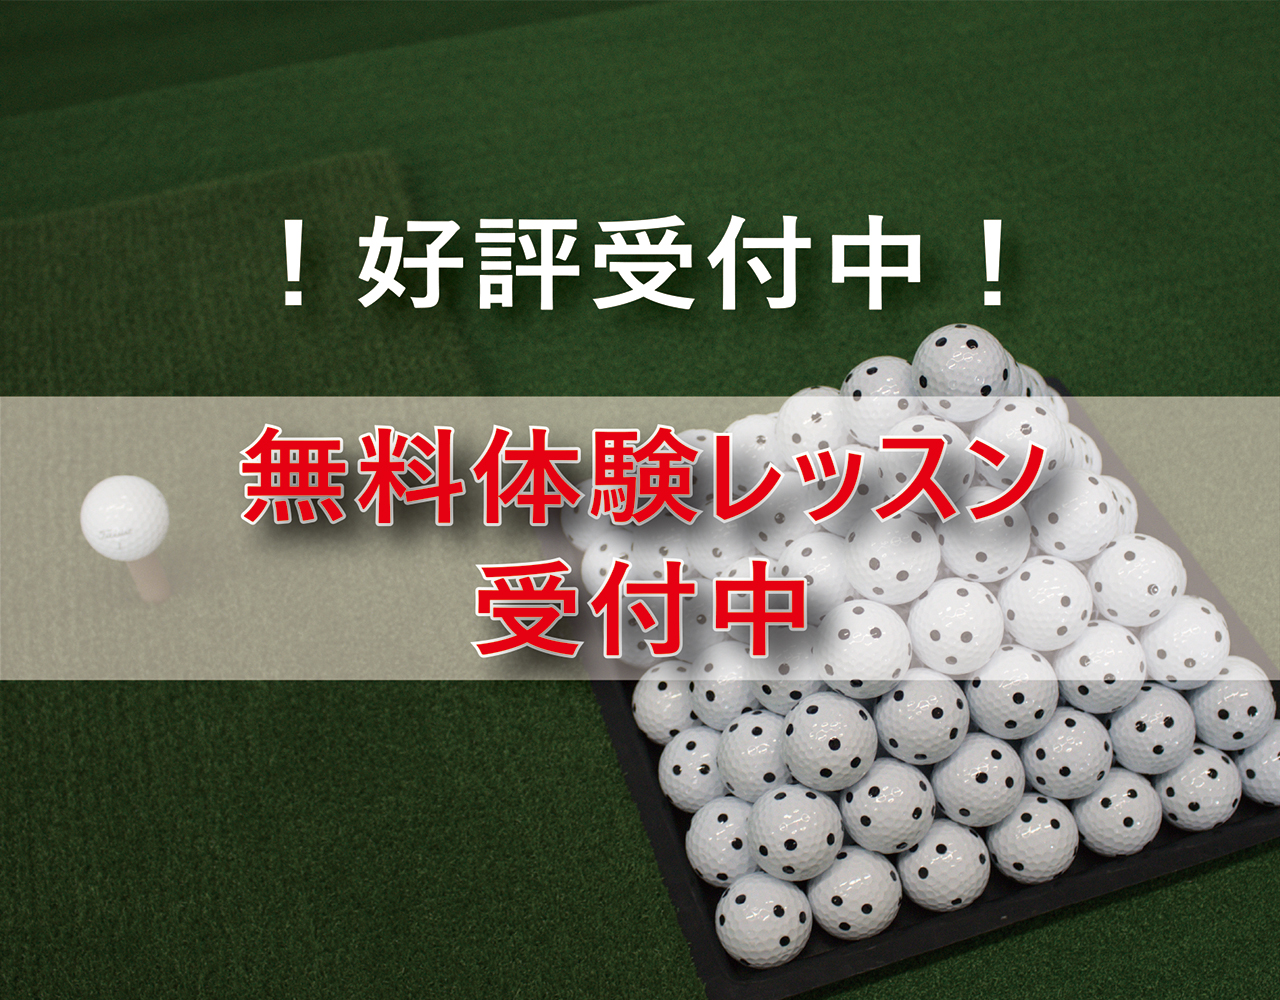 ゴルフィット新春キャンペーン